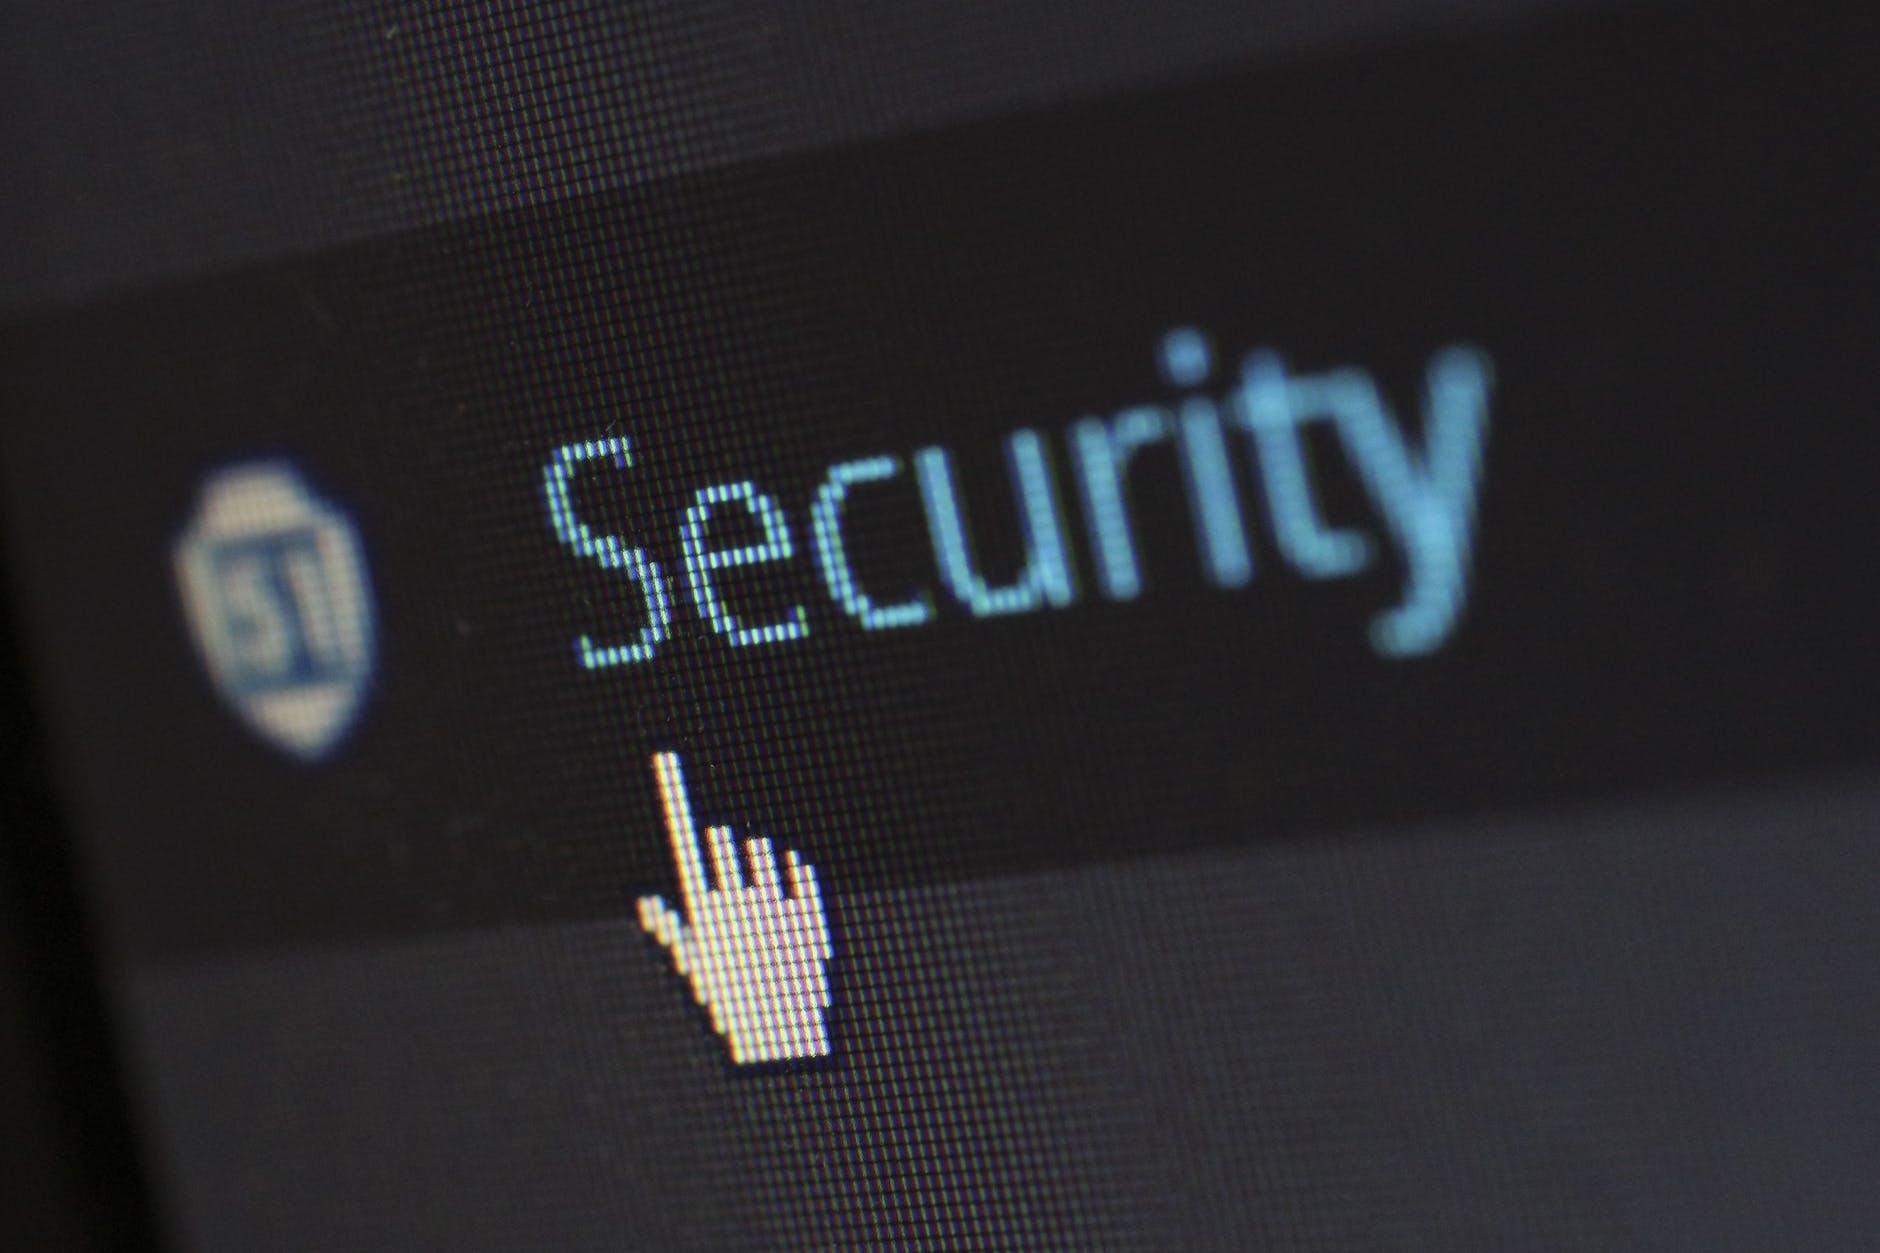 Ciberseguridad y seguridad de la información